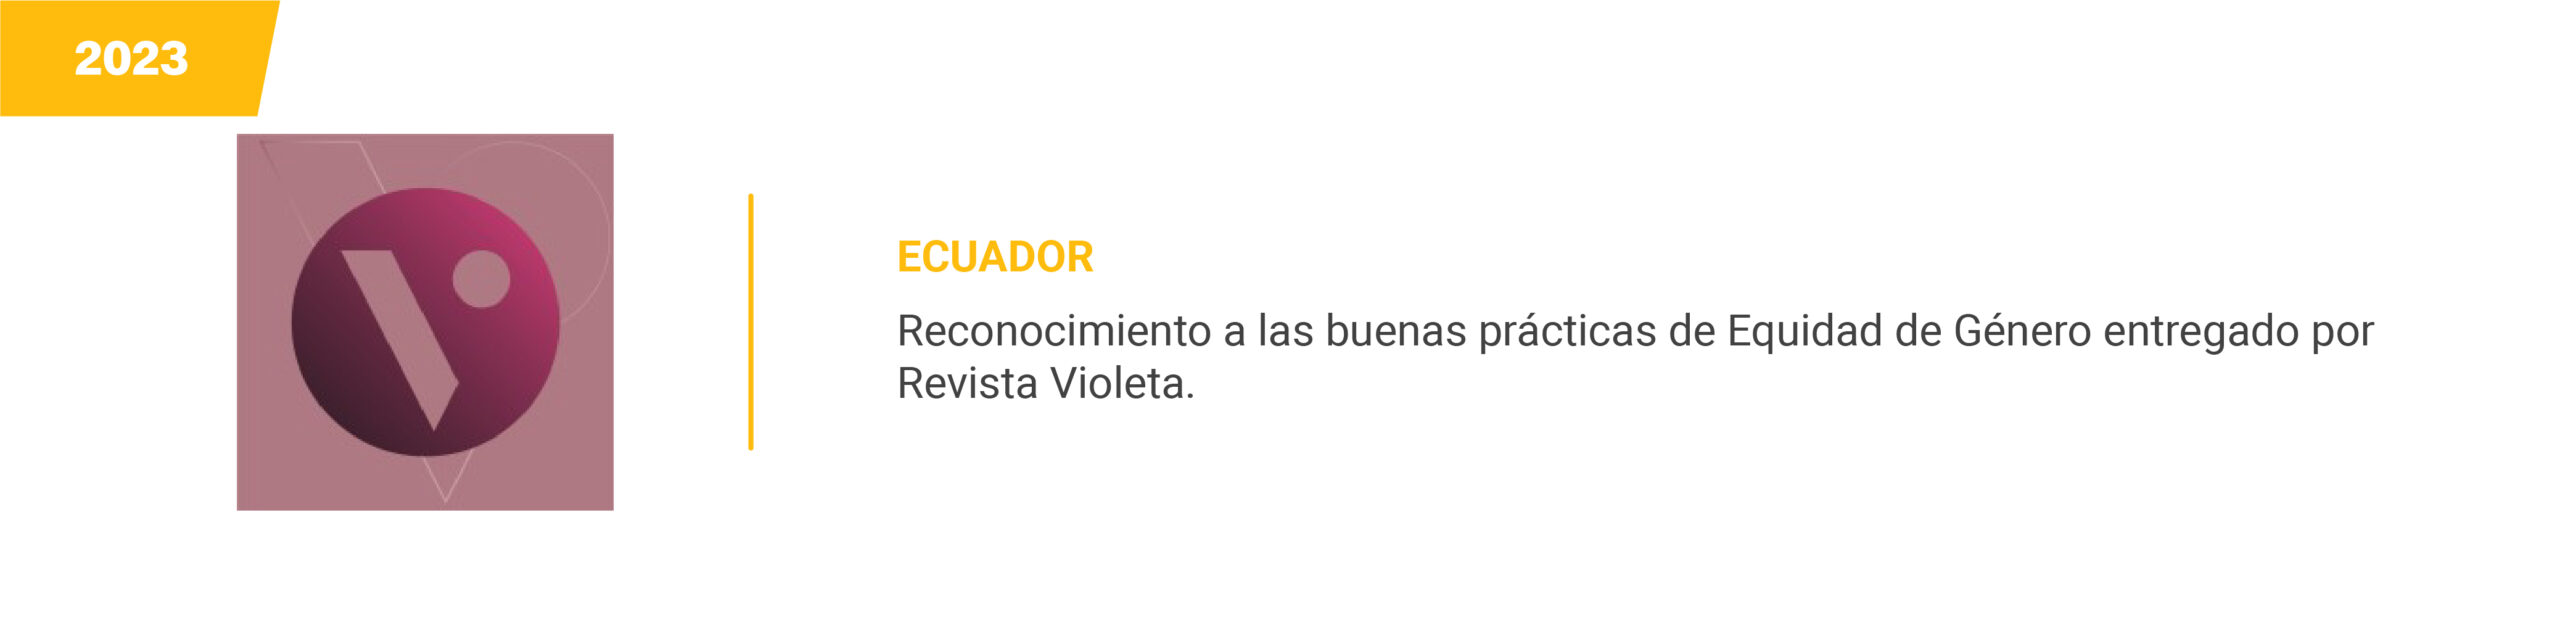 Revista Violeta - Ecuador - 2023